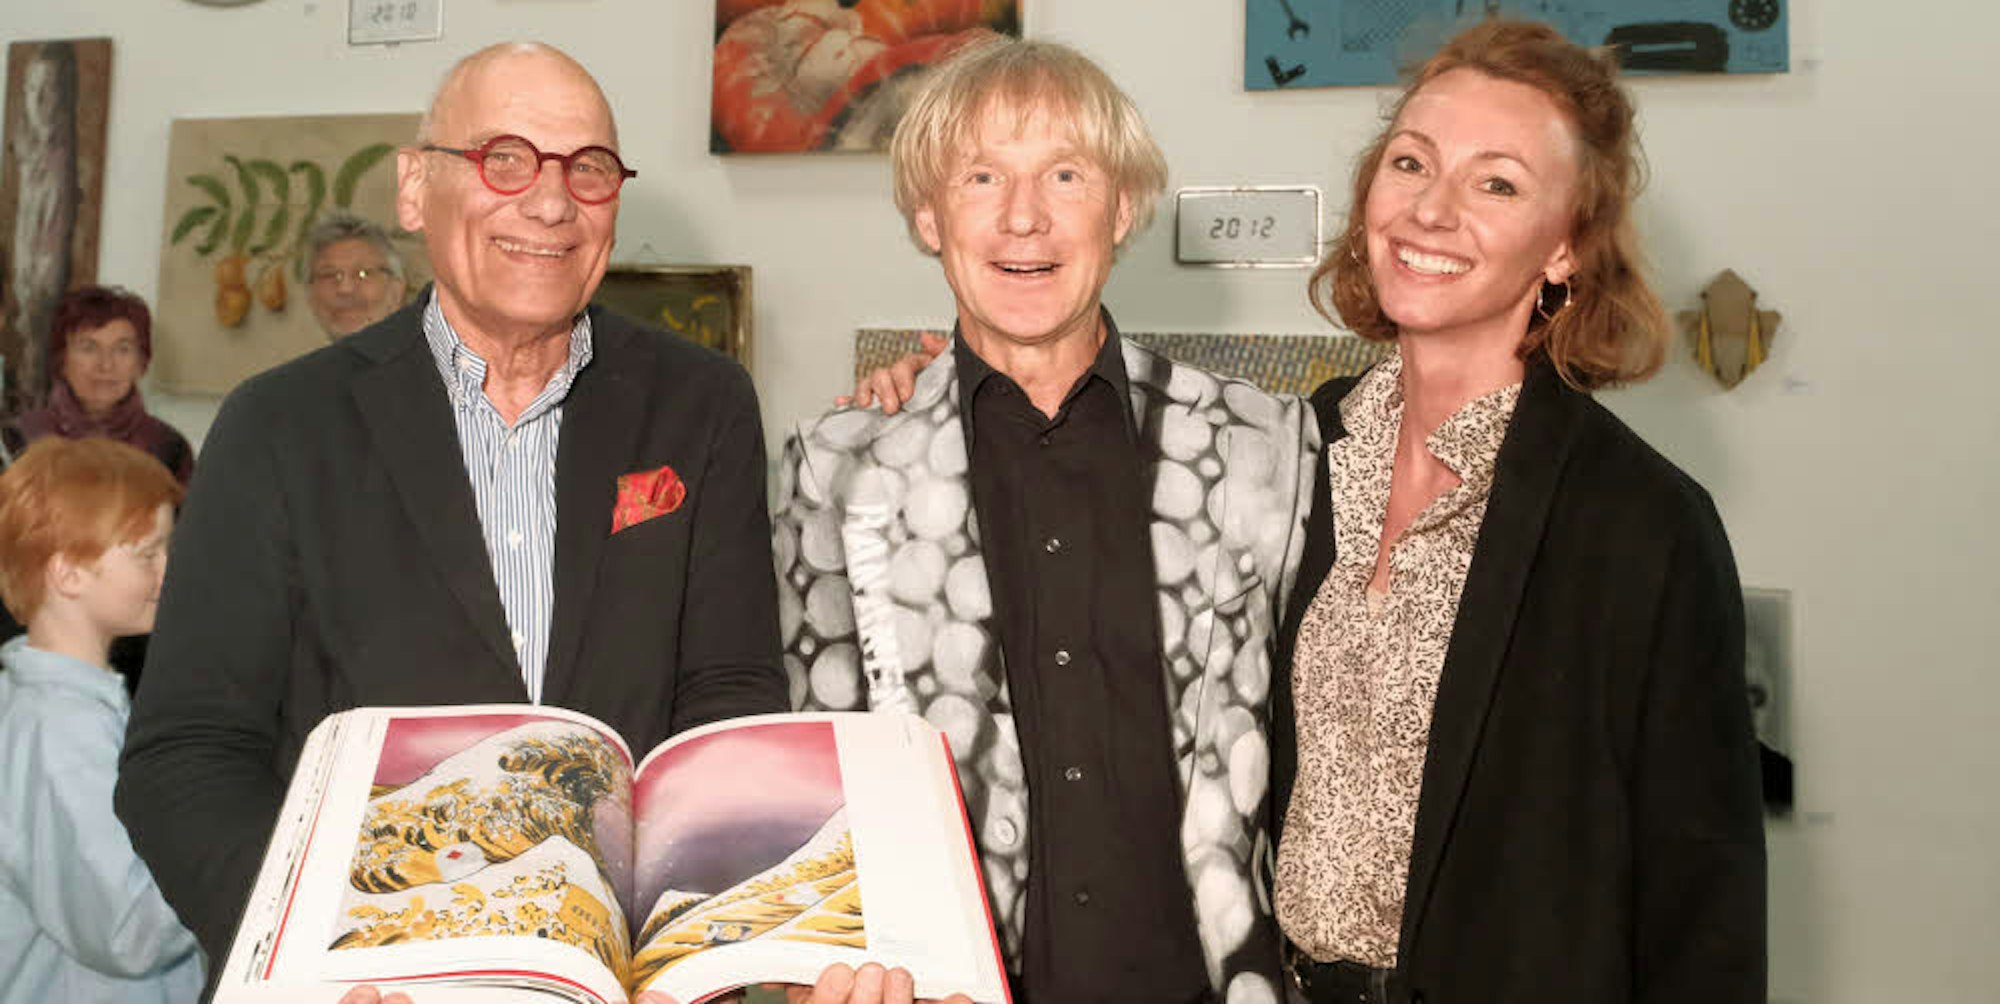 Verleger Michael Wienand (l.), Künstler Thomas Baumgärtel und Ehefrau und Grafikerin Nicole Meyer